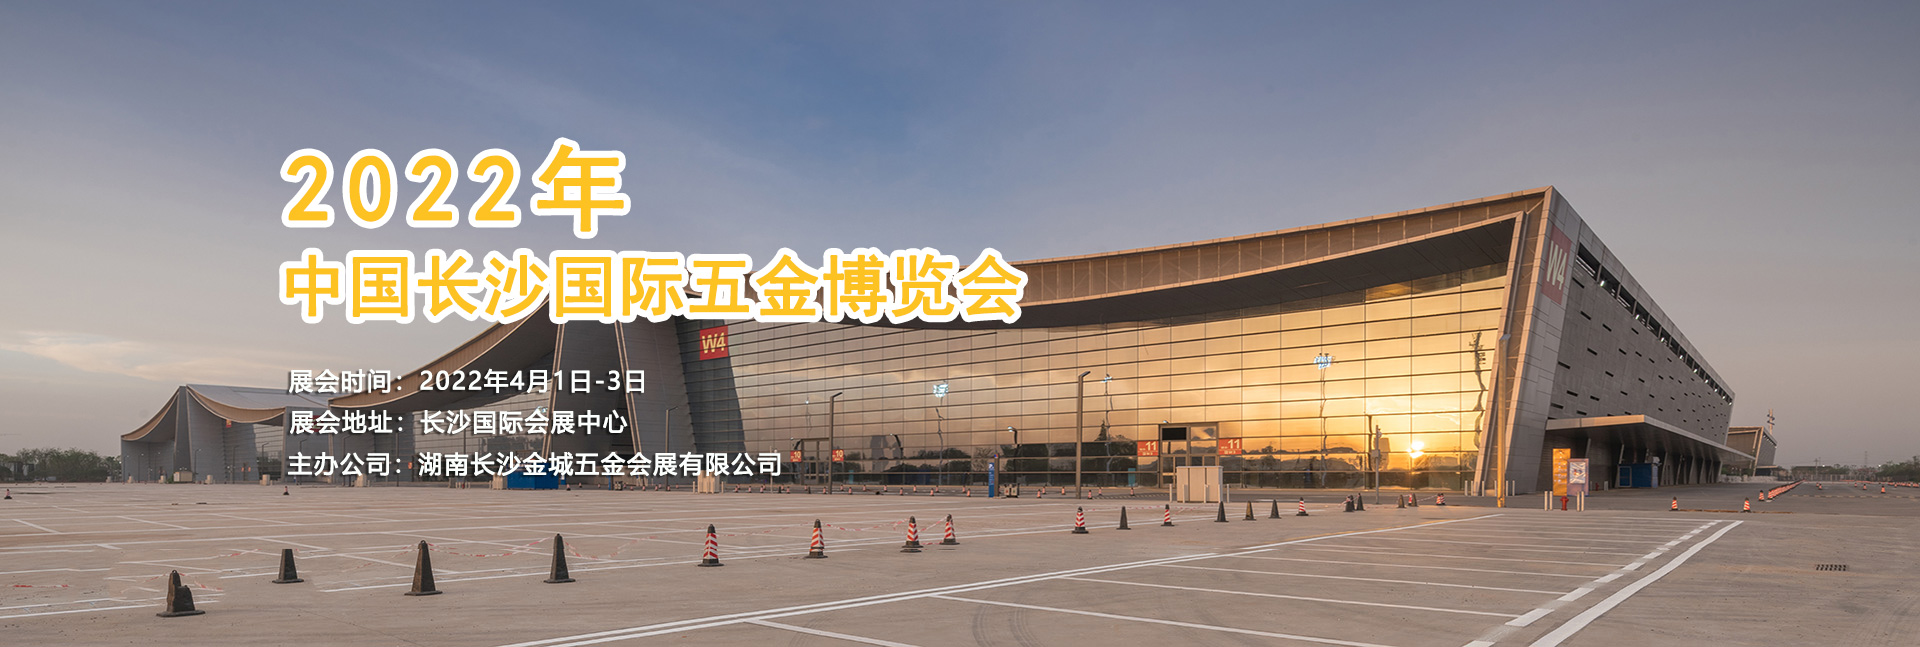 2022中國長沙國際五金博覽會